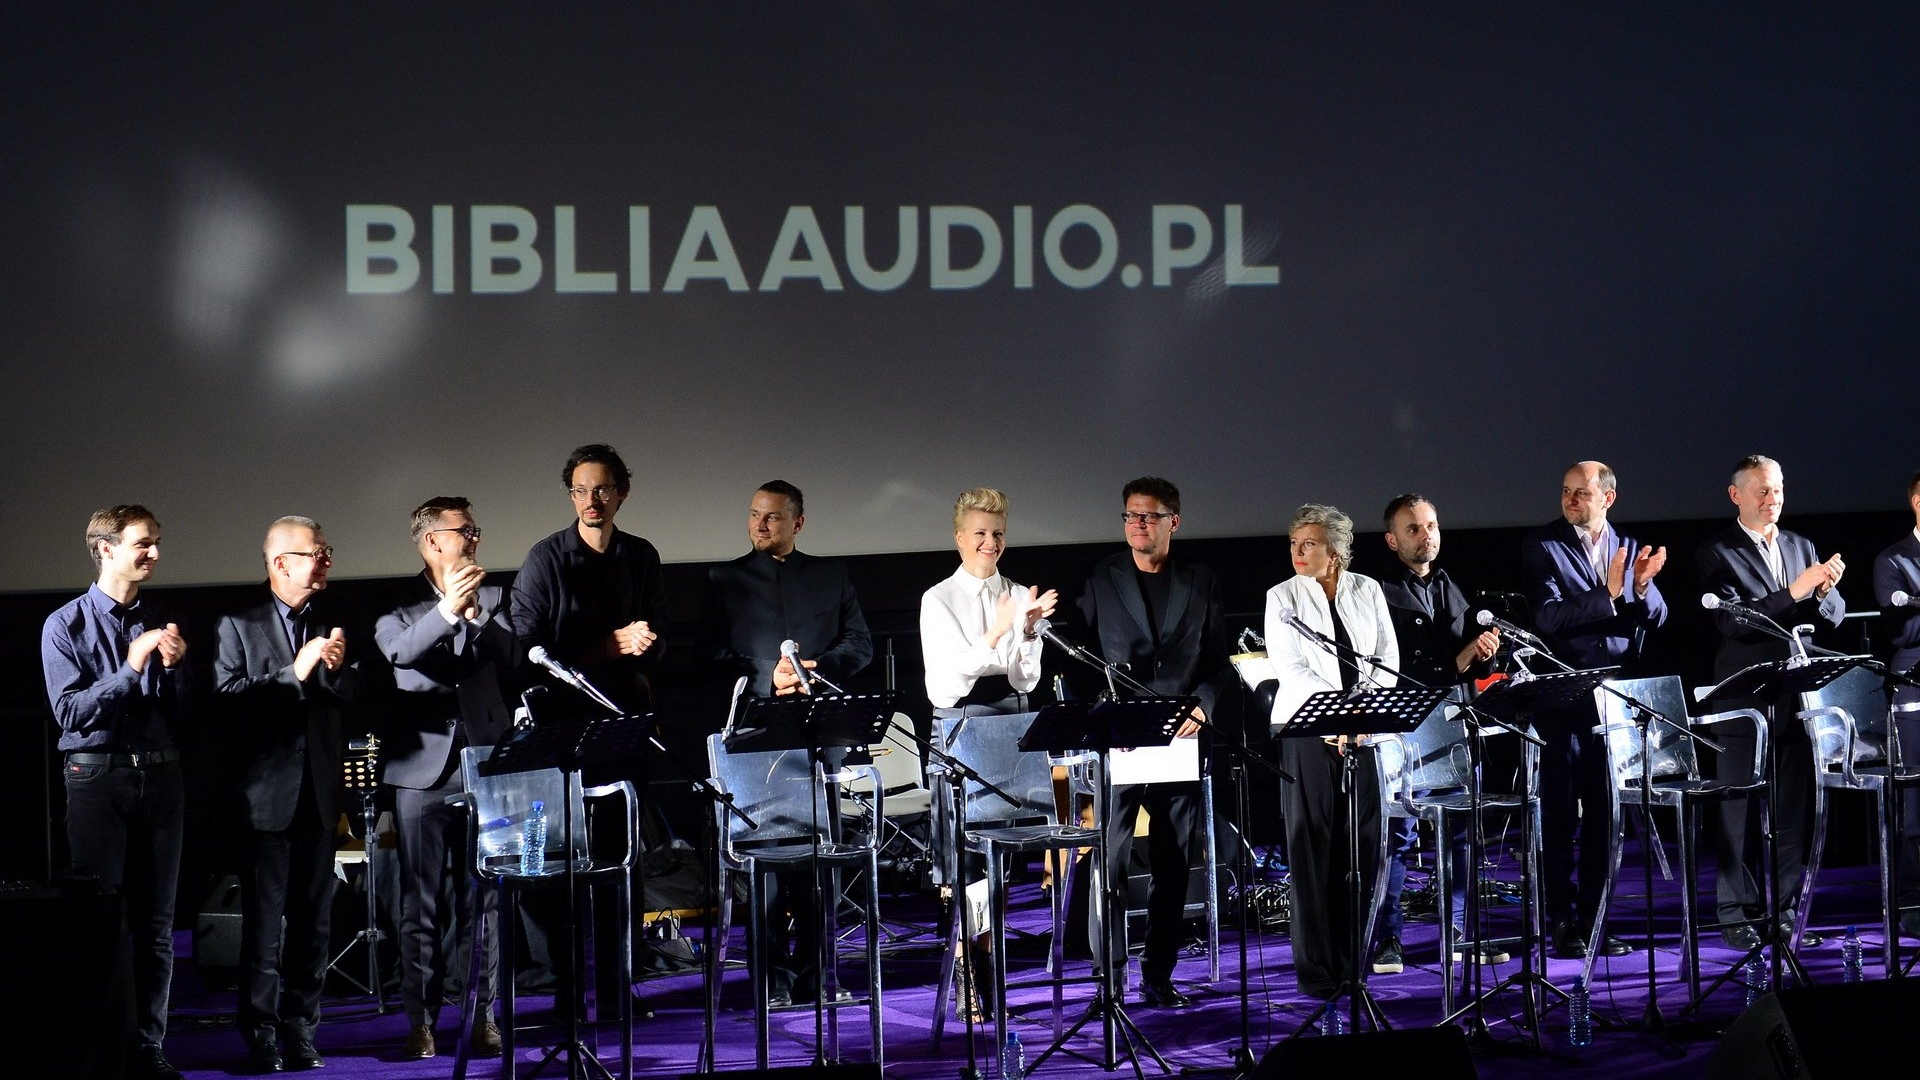 Premiera Biblii Audio w Warszawie. Fot. Radosław Nawrocki/Archiwum